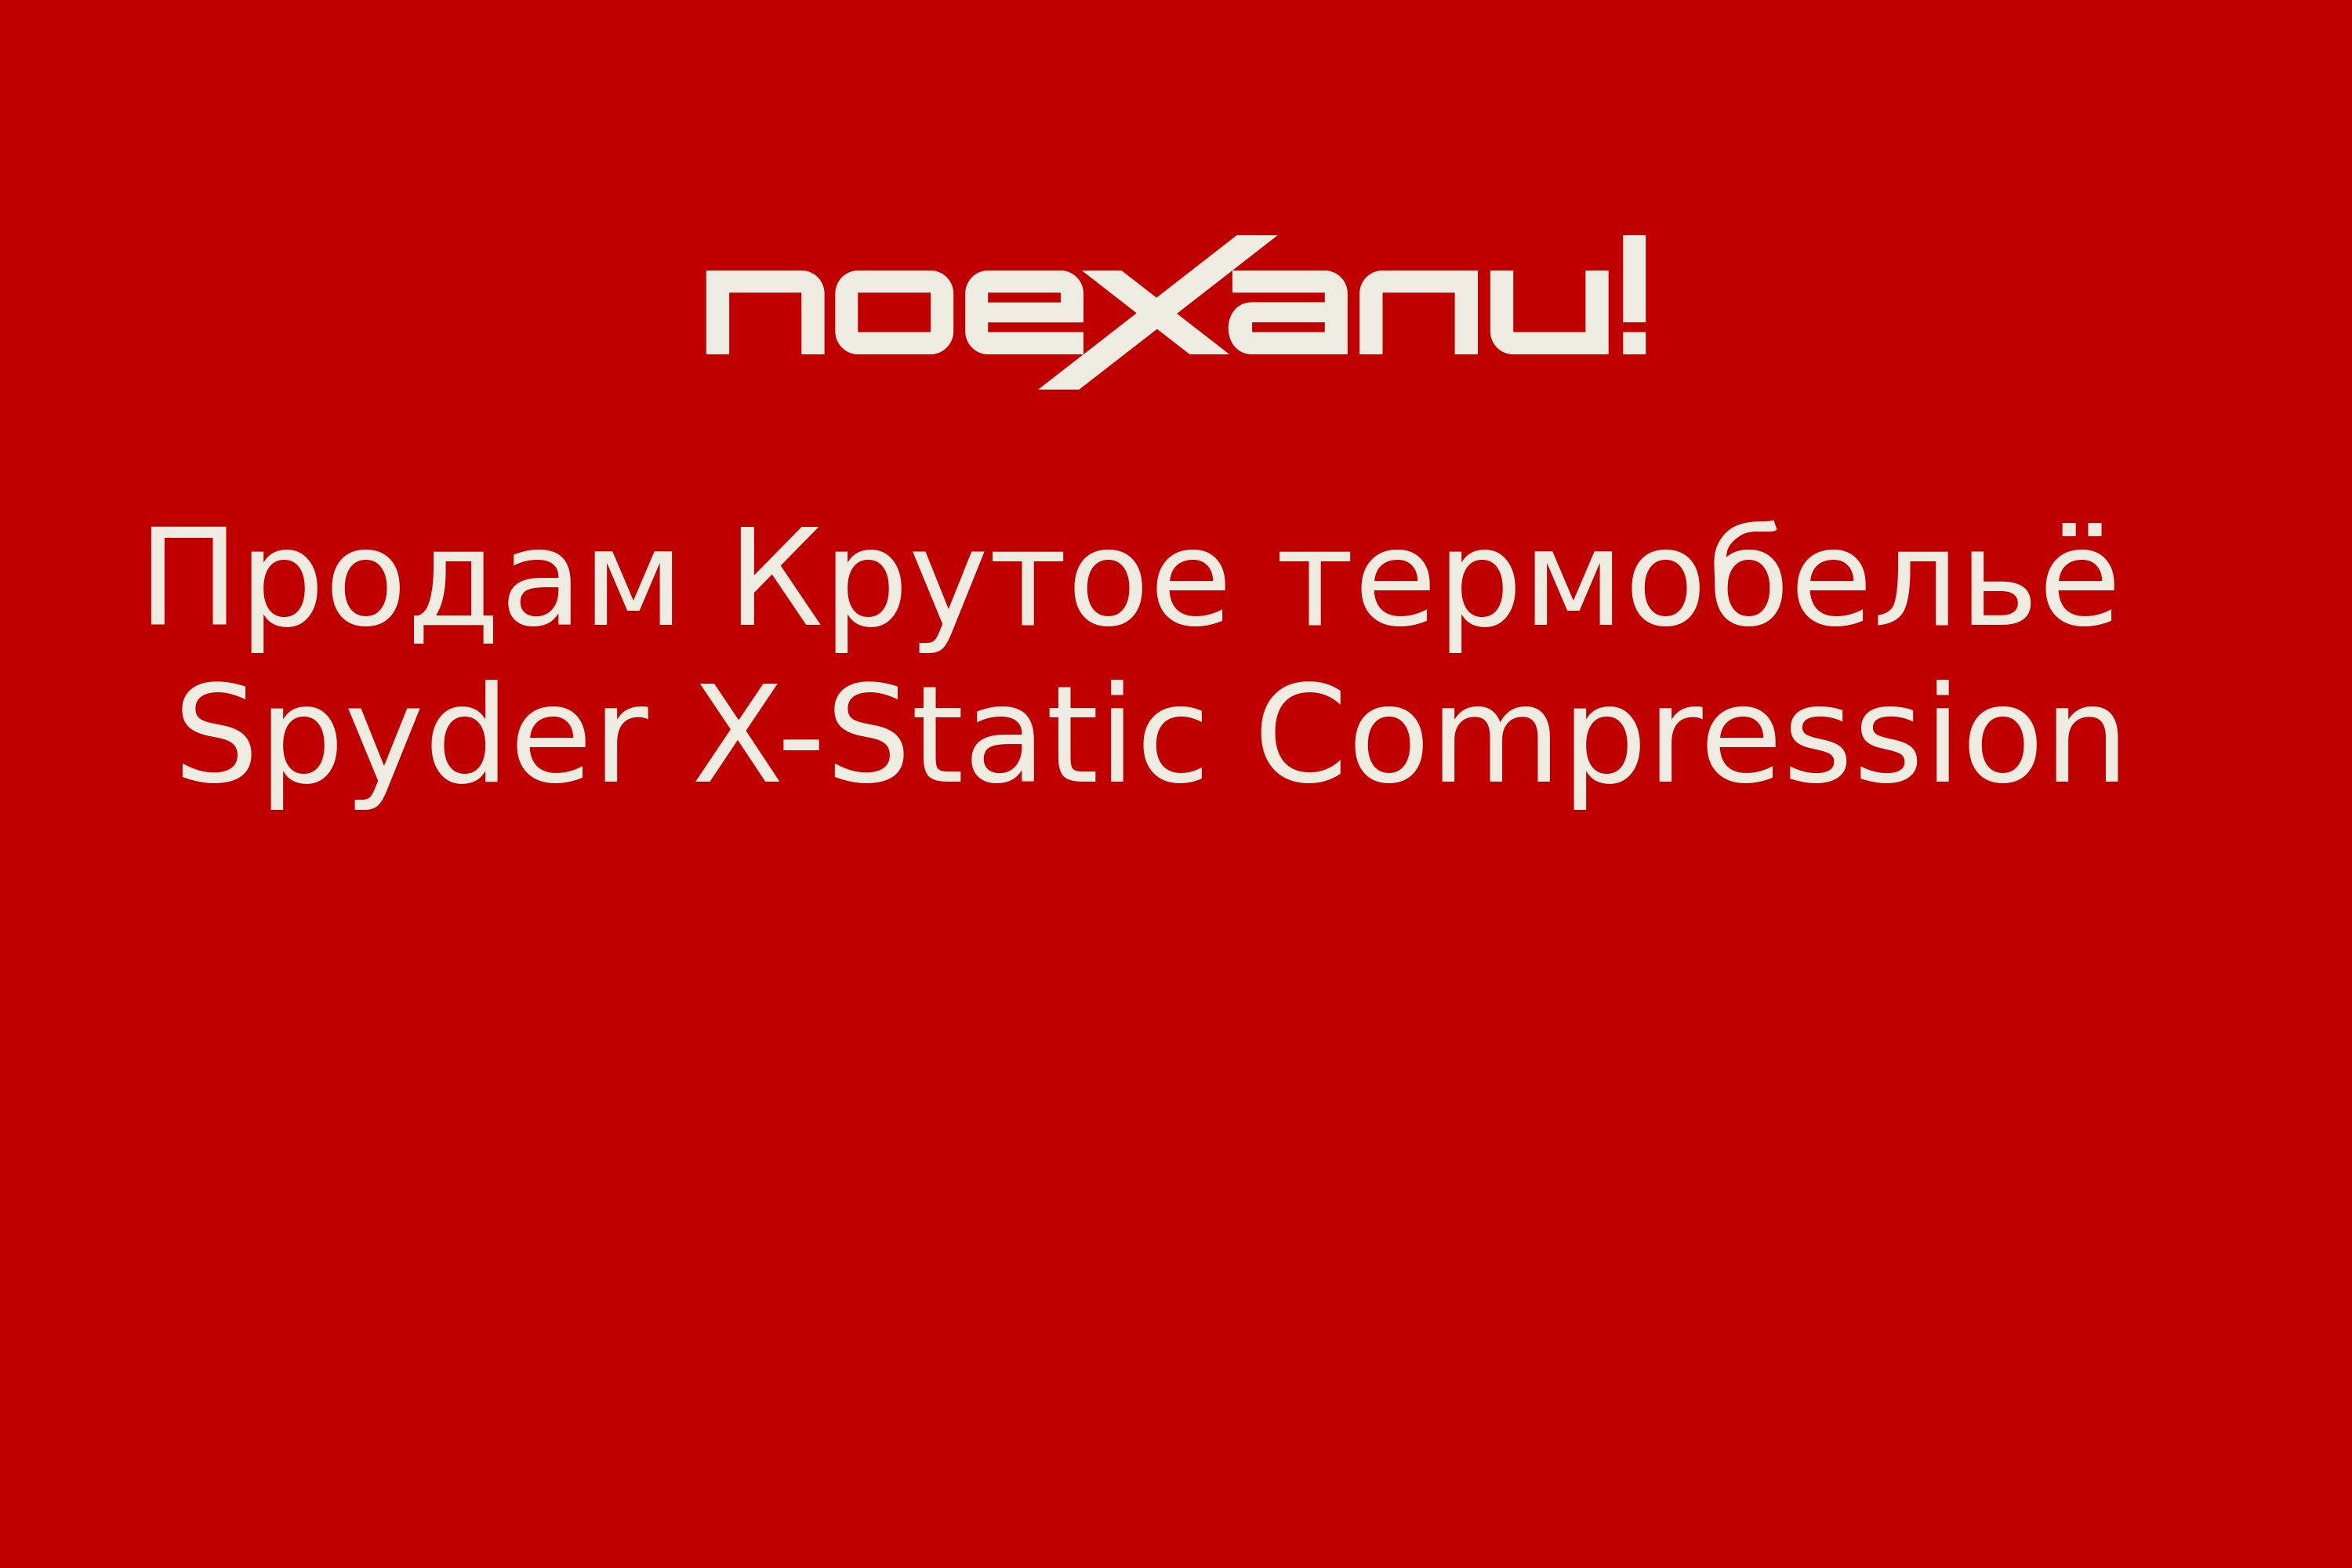 Продам Крутое термобельё Spyder X-Static Compression - Поехали!